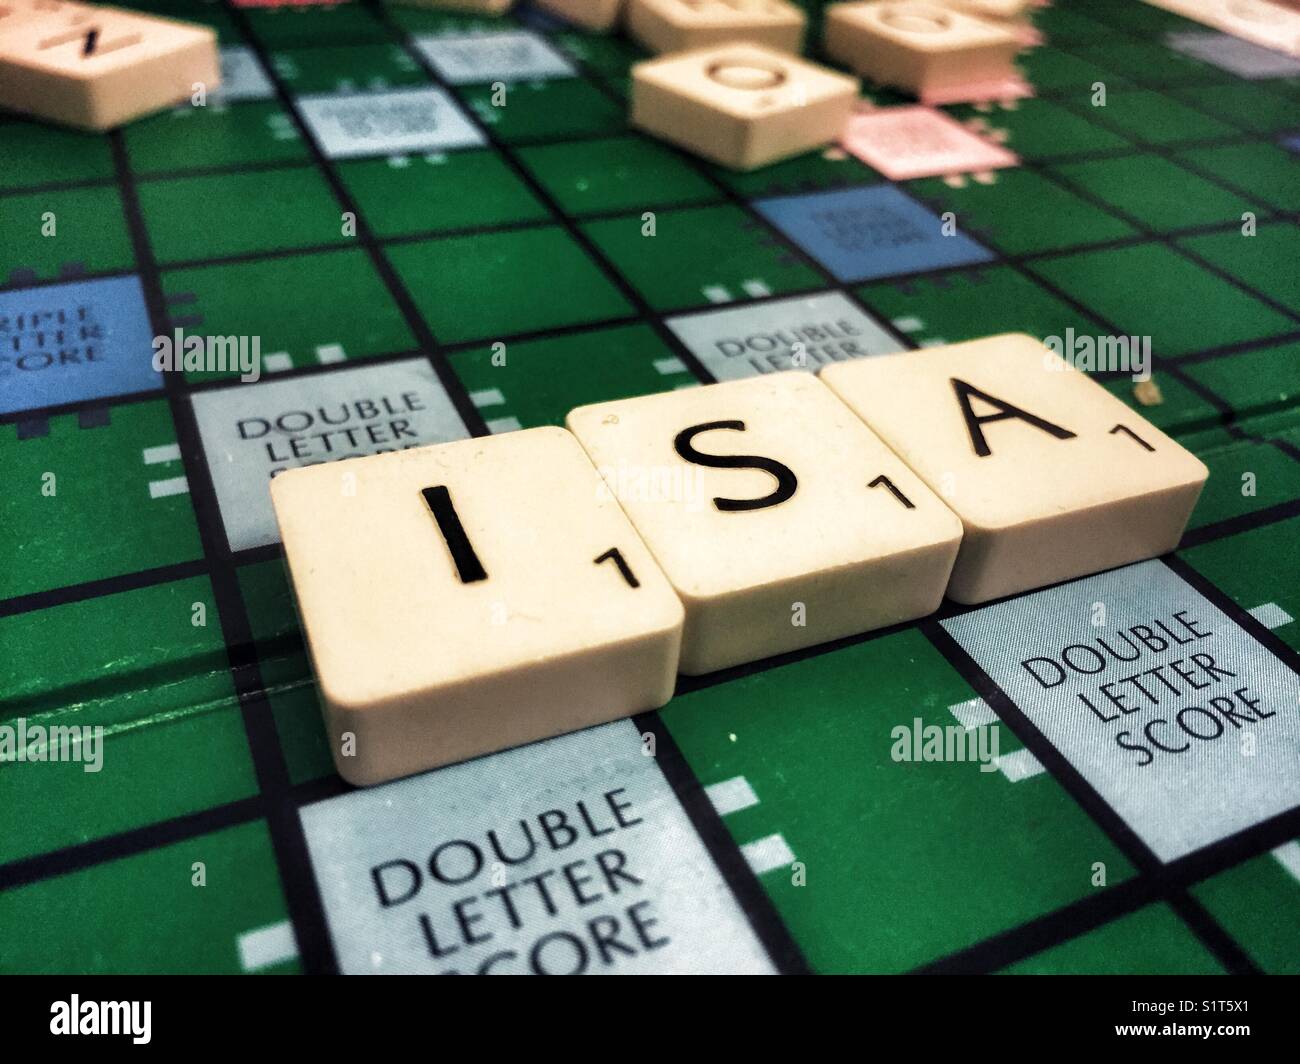 ISA (individuelle sparkonto) mit Scrabble geschrieben Stockfoto